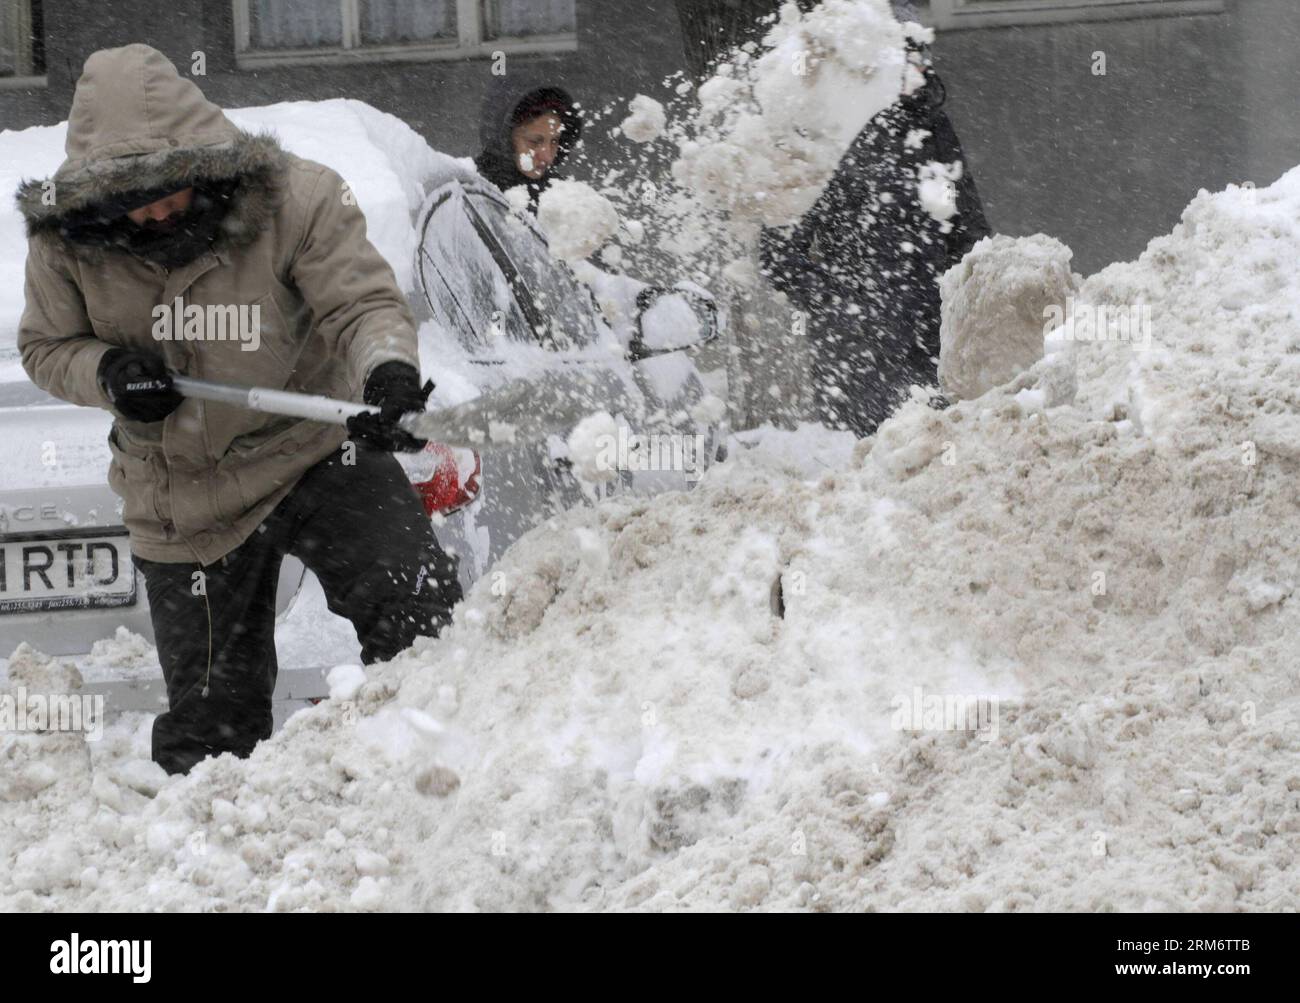 BUKAREST, 29. Januar 2014 (Xinhua) -- Ein Einheimischer entfernt den Schnee in der Nähe seines Autos in Bukarest, Hauptstadt von Rumänien, 29. Januar 2014. Ein neuer schwerer Schneesturm am Mittwoch begann, die rumänische Hauptstadt sowie den Süden und Südosten zu treffen. Die rumänischen Behörden haben in vier weiteren Bezirken Ialomita, Calarasi, Constanta und Tulcea den Ausnahmezustand ausgerufen, um eine bessere Reaktion auf den aktuellen Schneesturm zu ermöglichen. (Xinhua/Gabriel Petrescu)(Axy) RUMÄNIEN-BUKAREST-SNOW NOTFALL PUBLICATIONxNOTxINxCHN Bukarest Jan 29 2014 XINHUA ein ortsansässiger Bewohner entfernt den Schnee in der Nähe seines Autos in Bukarest Hauptstadt von RO Stockfoto